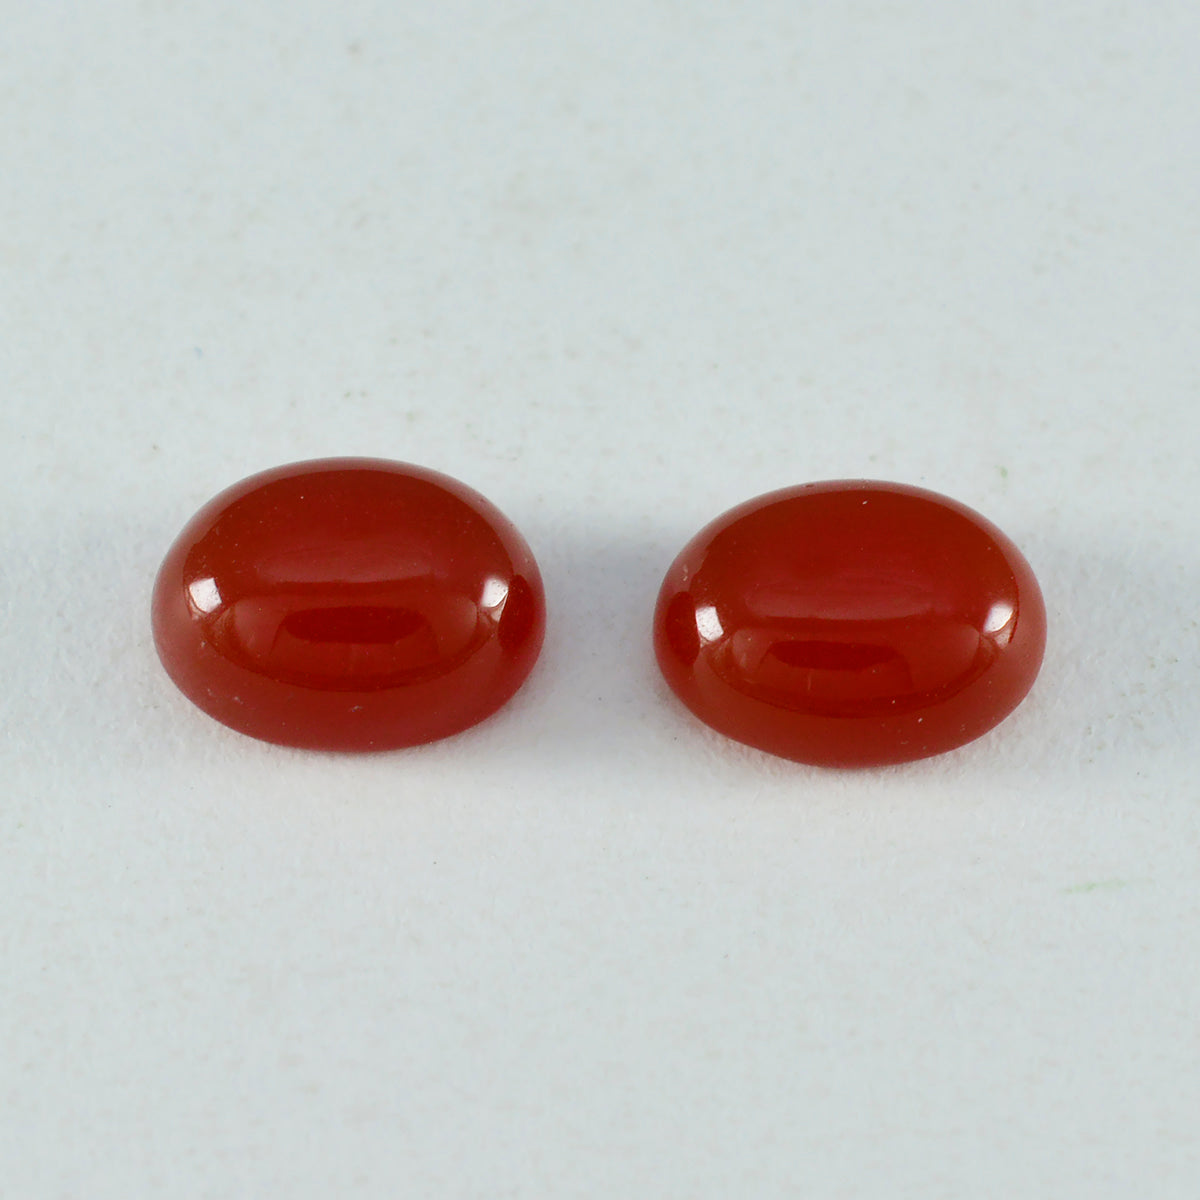 riyogems 1st röd onyx cabochon 10x14 mm oval form fin kvalitet ädelsten